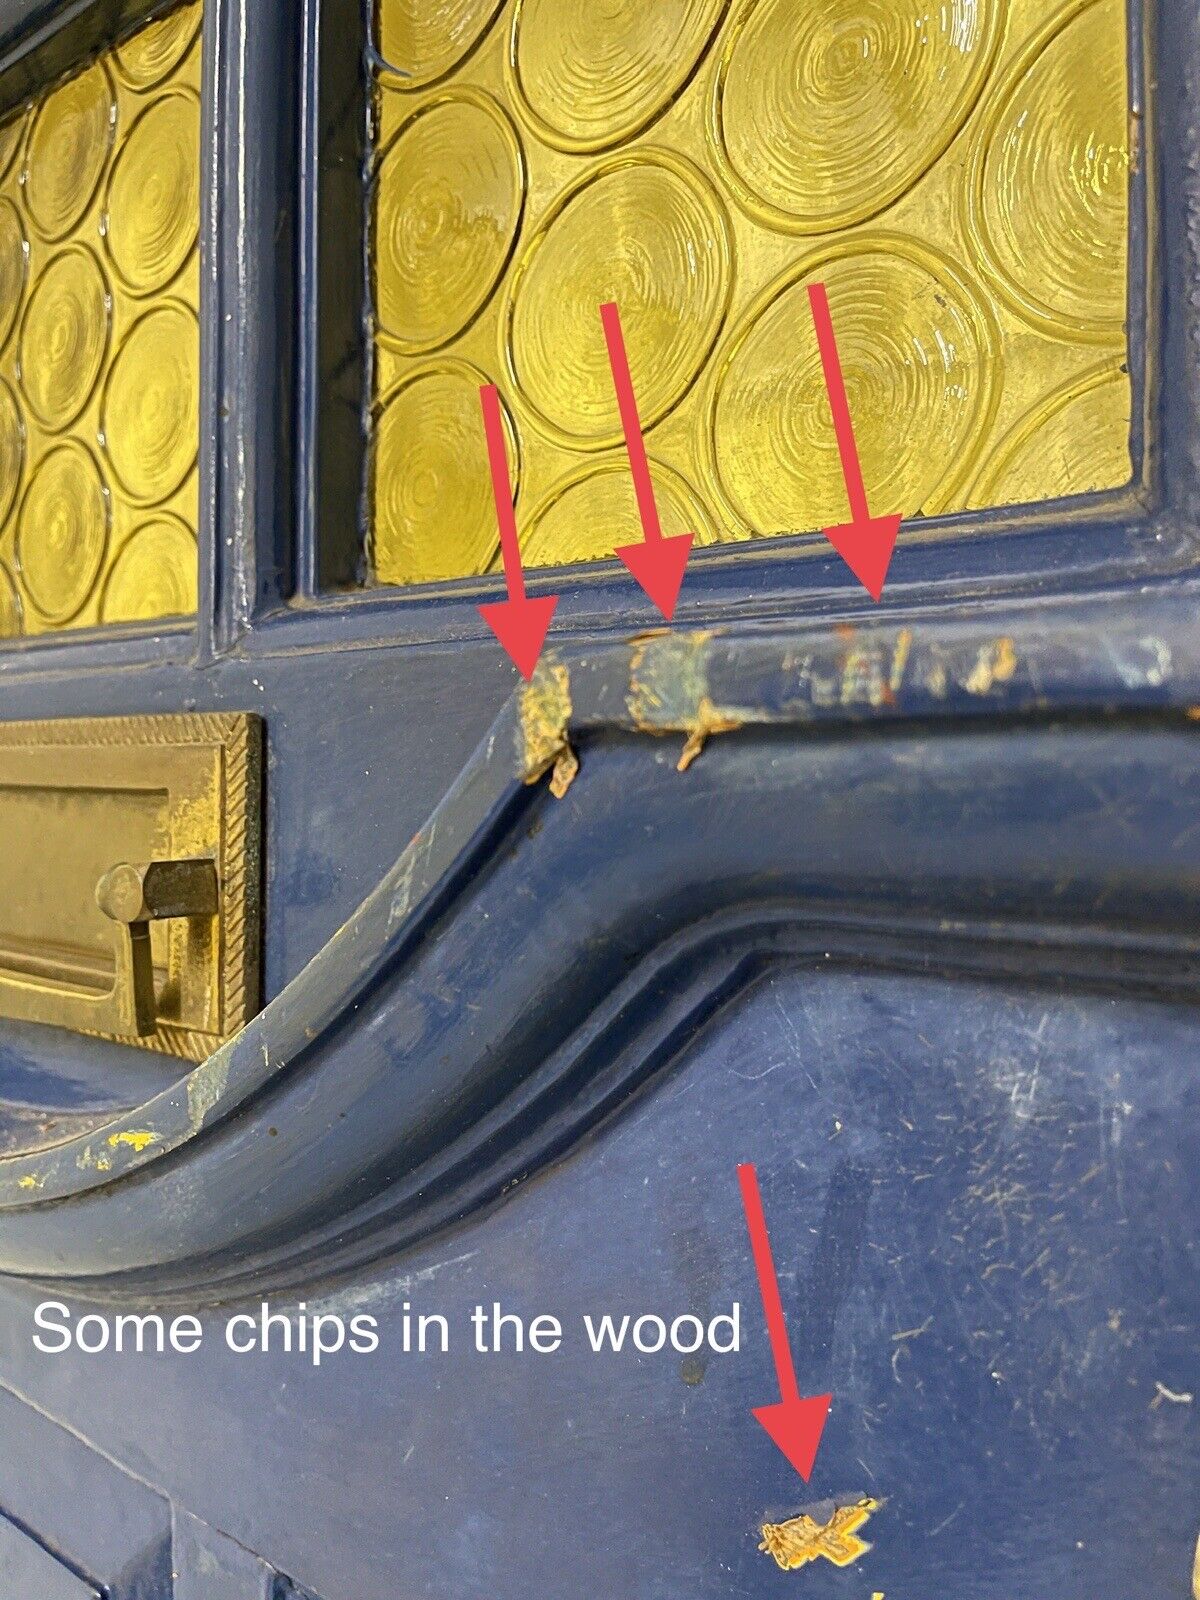 Reclaimed Old Edwardian Victorian Wooden Panel Front Door 1975mm x 808mm